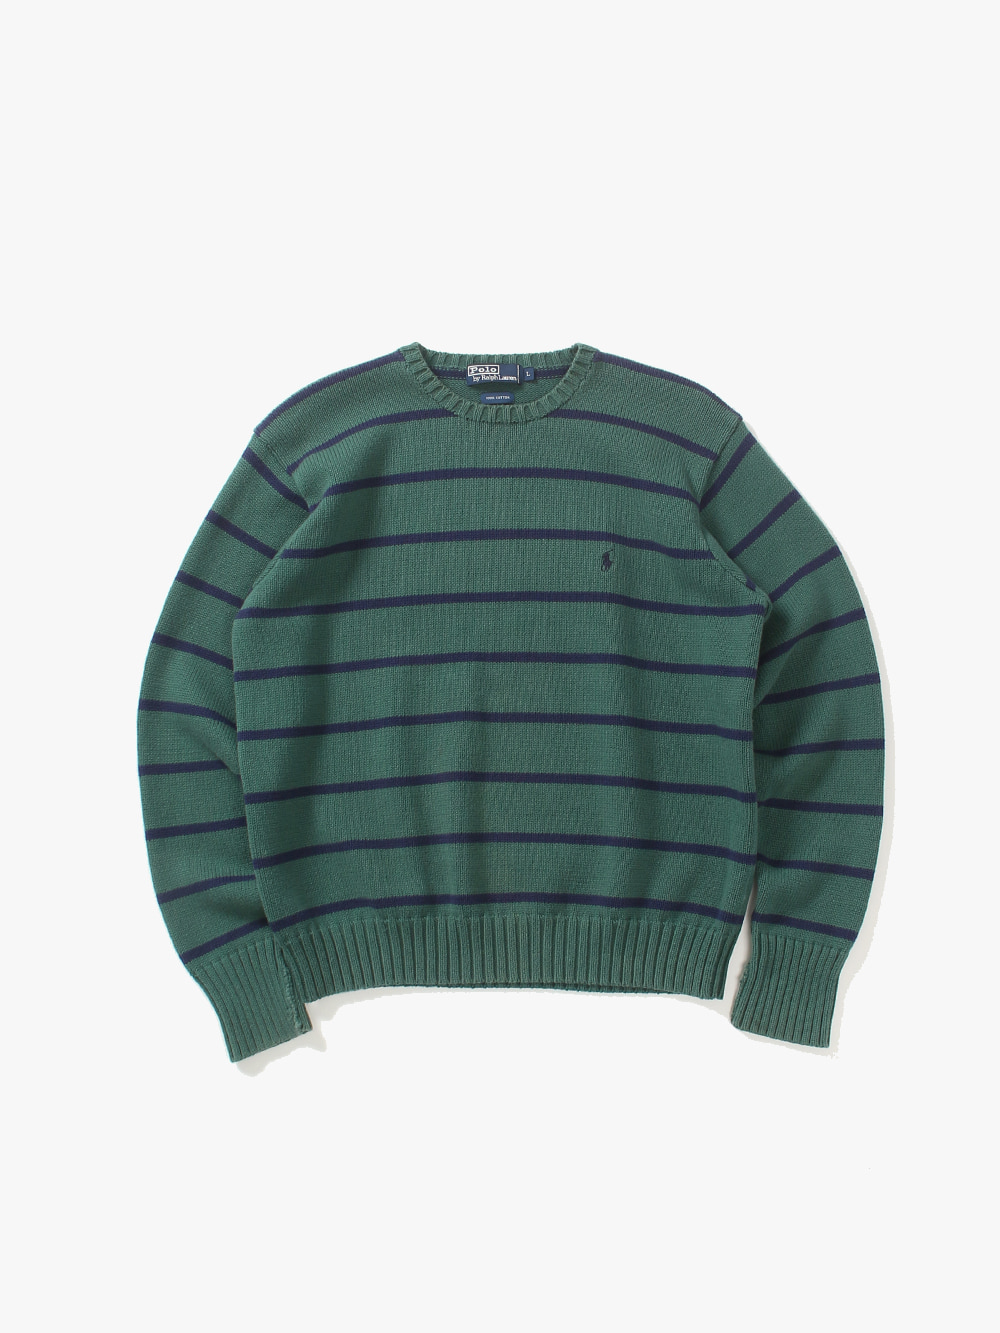 [ L ] Polo Ralph Lauren Sweater (6373)